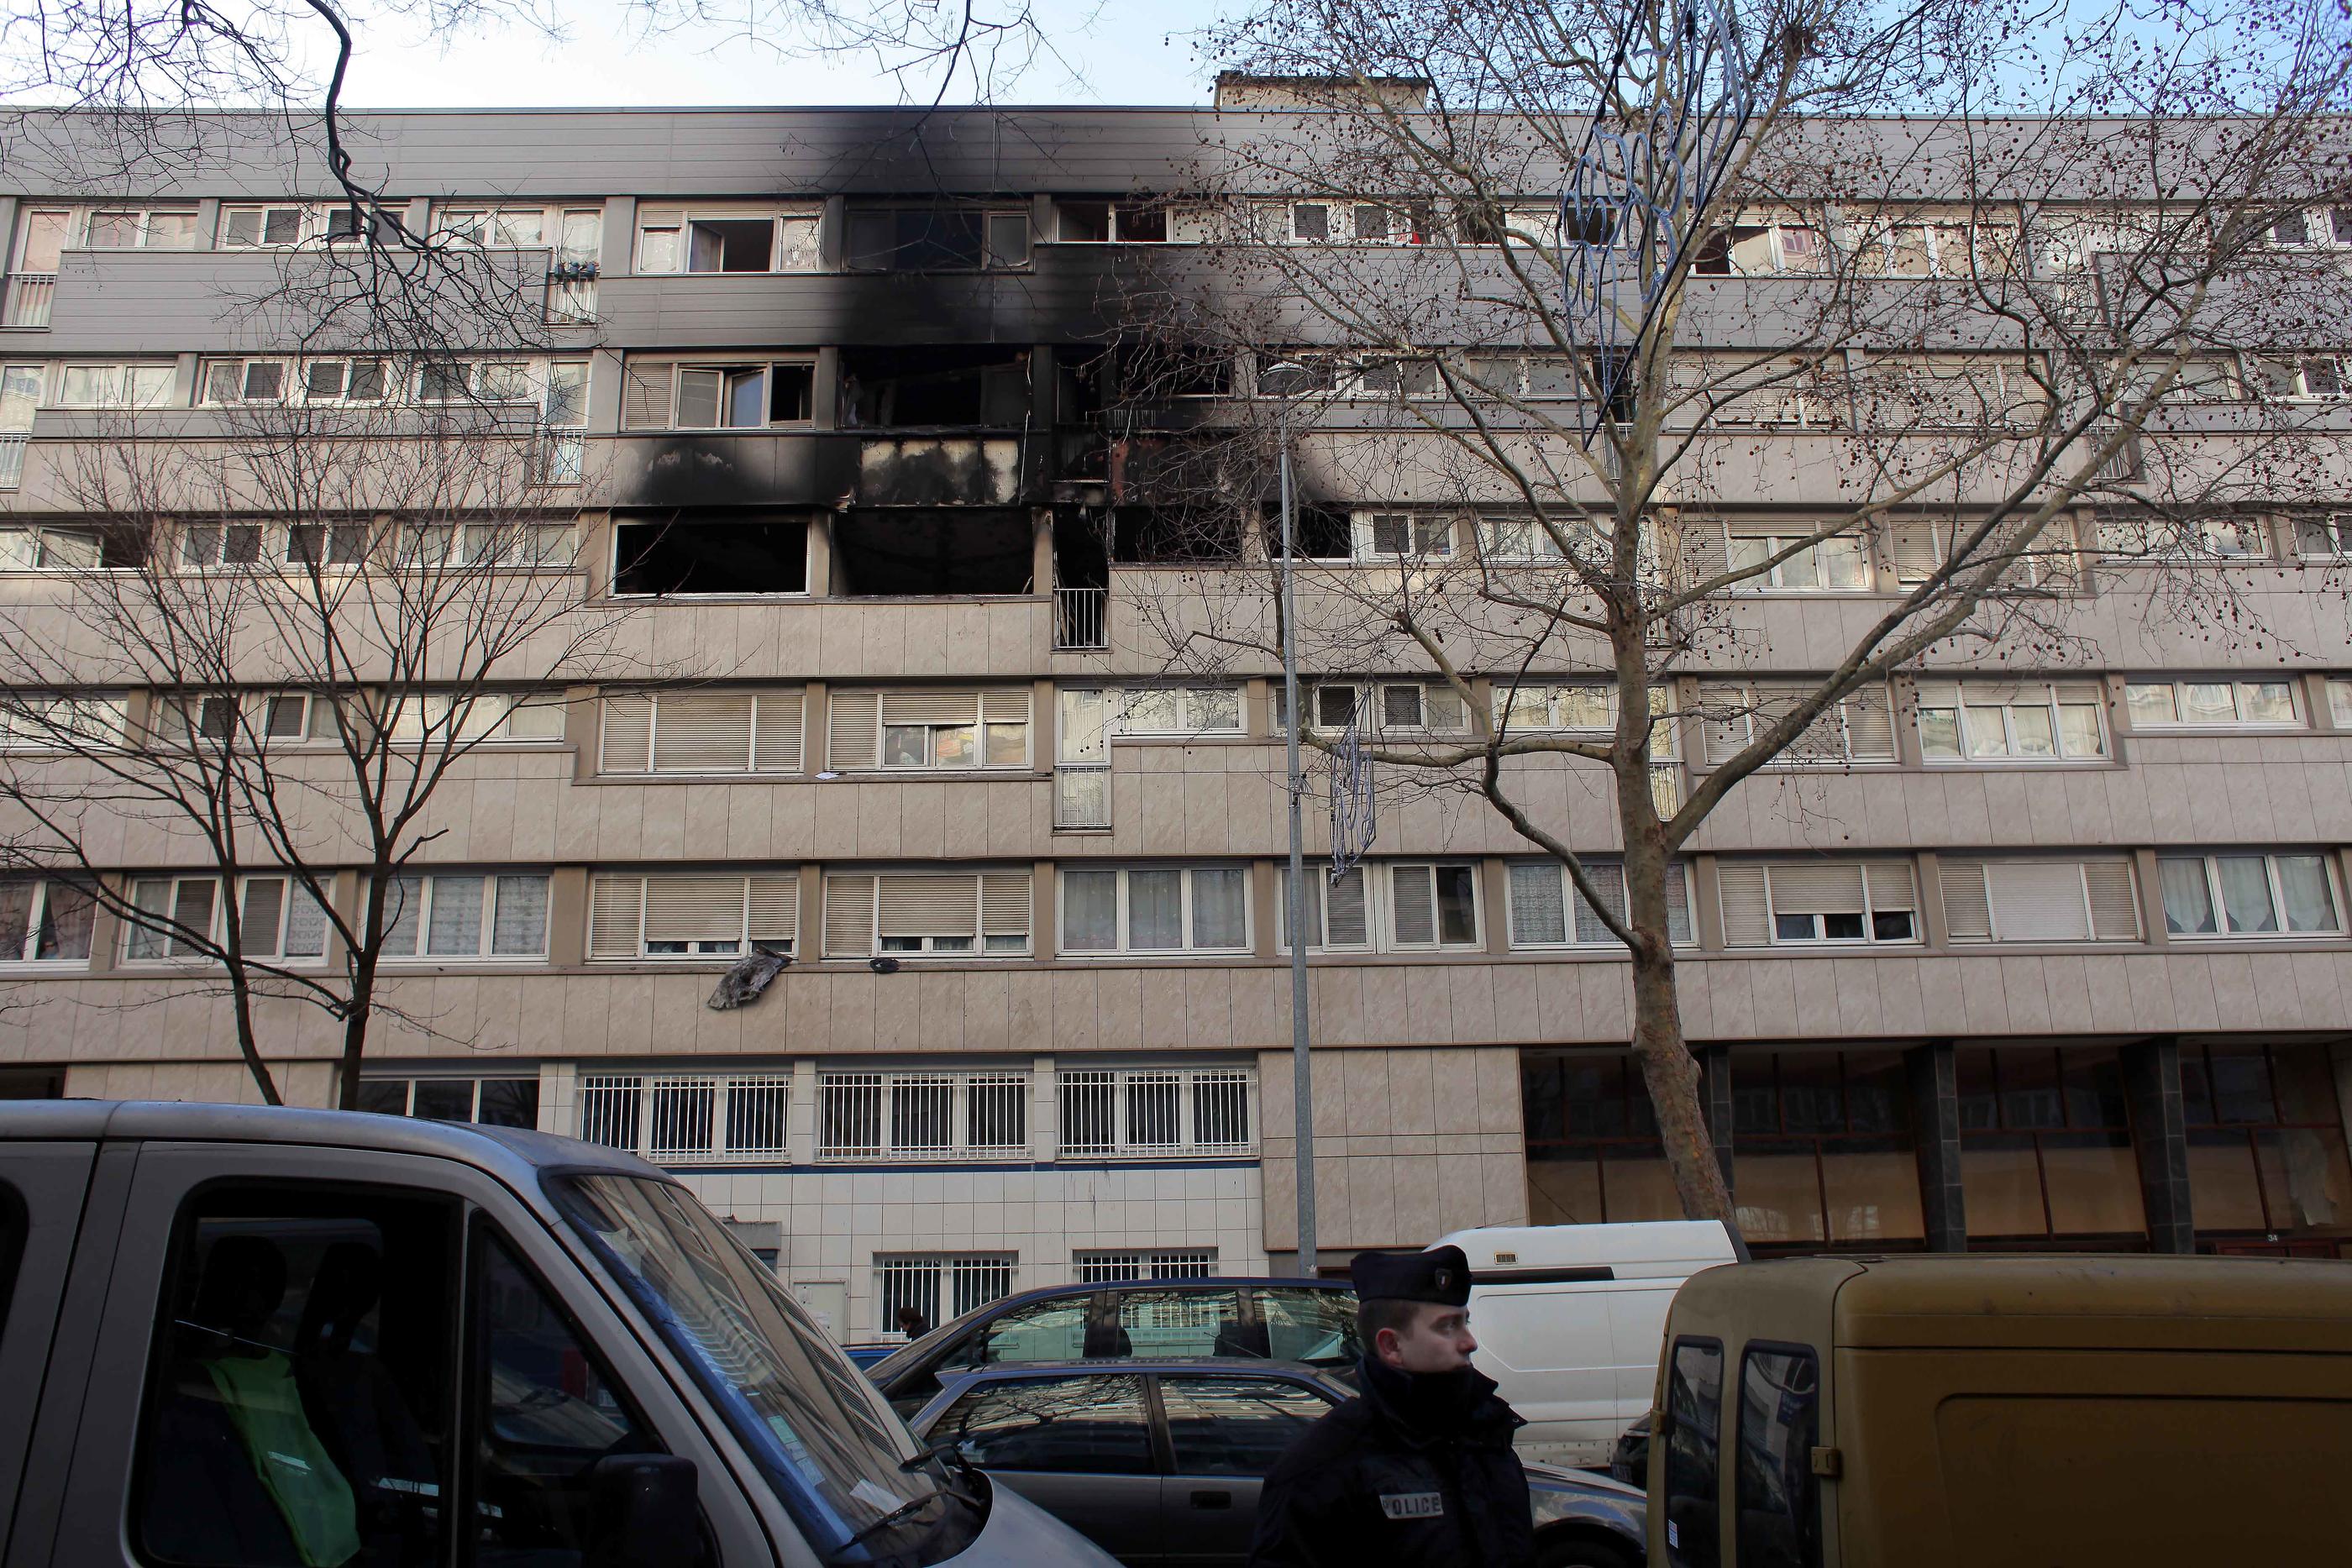 Gennevilliers (Hauts-de-Seine), janvier 2013. L'incendie, qui se serait déclaré sur un balcon du 4e étage, a fait cinq morts d'une même famille dans l'appartement du dessus. LP/Olivier Corsan.